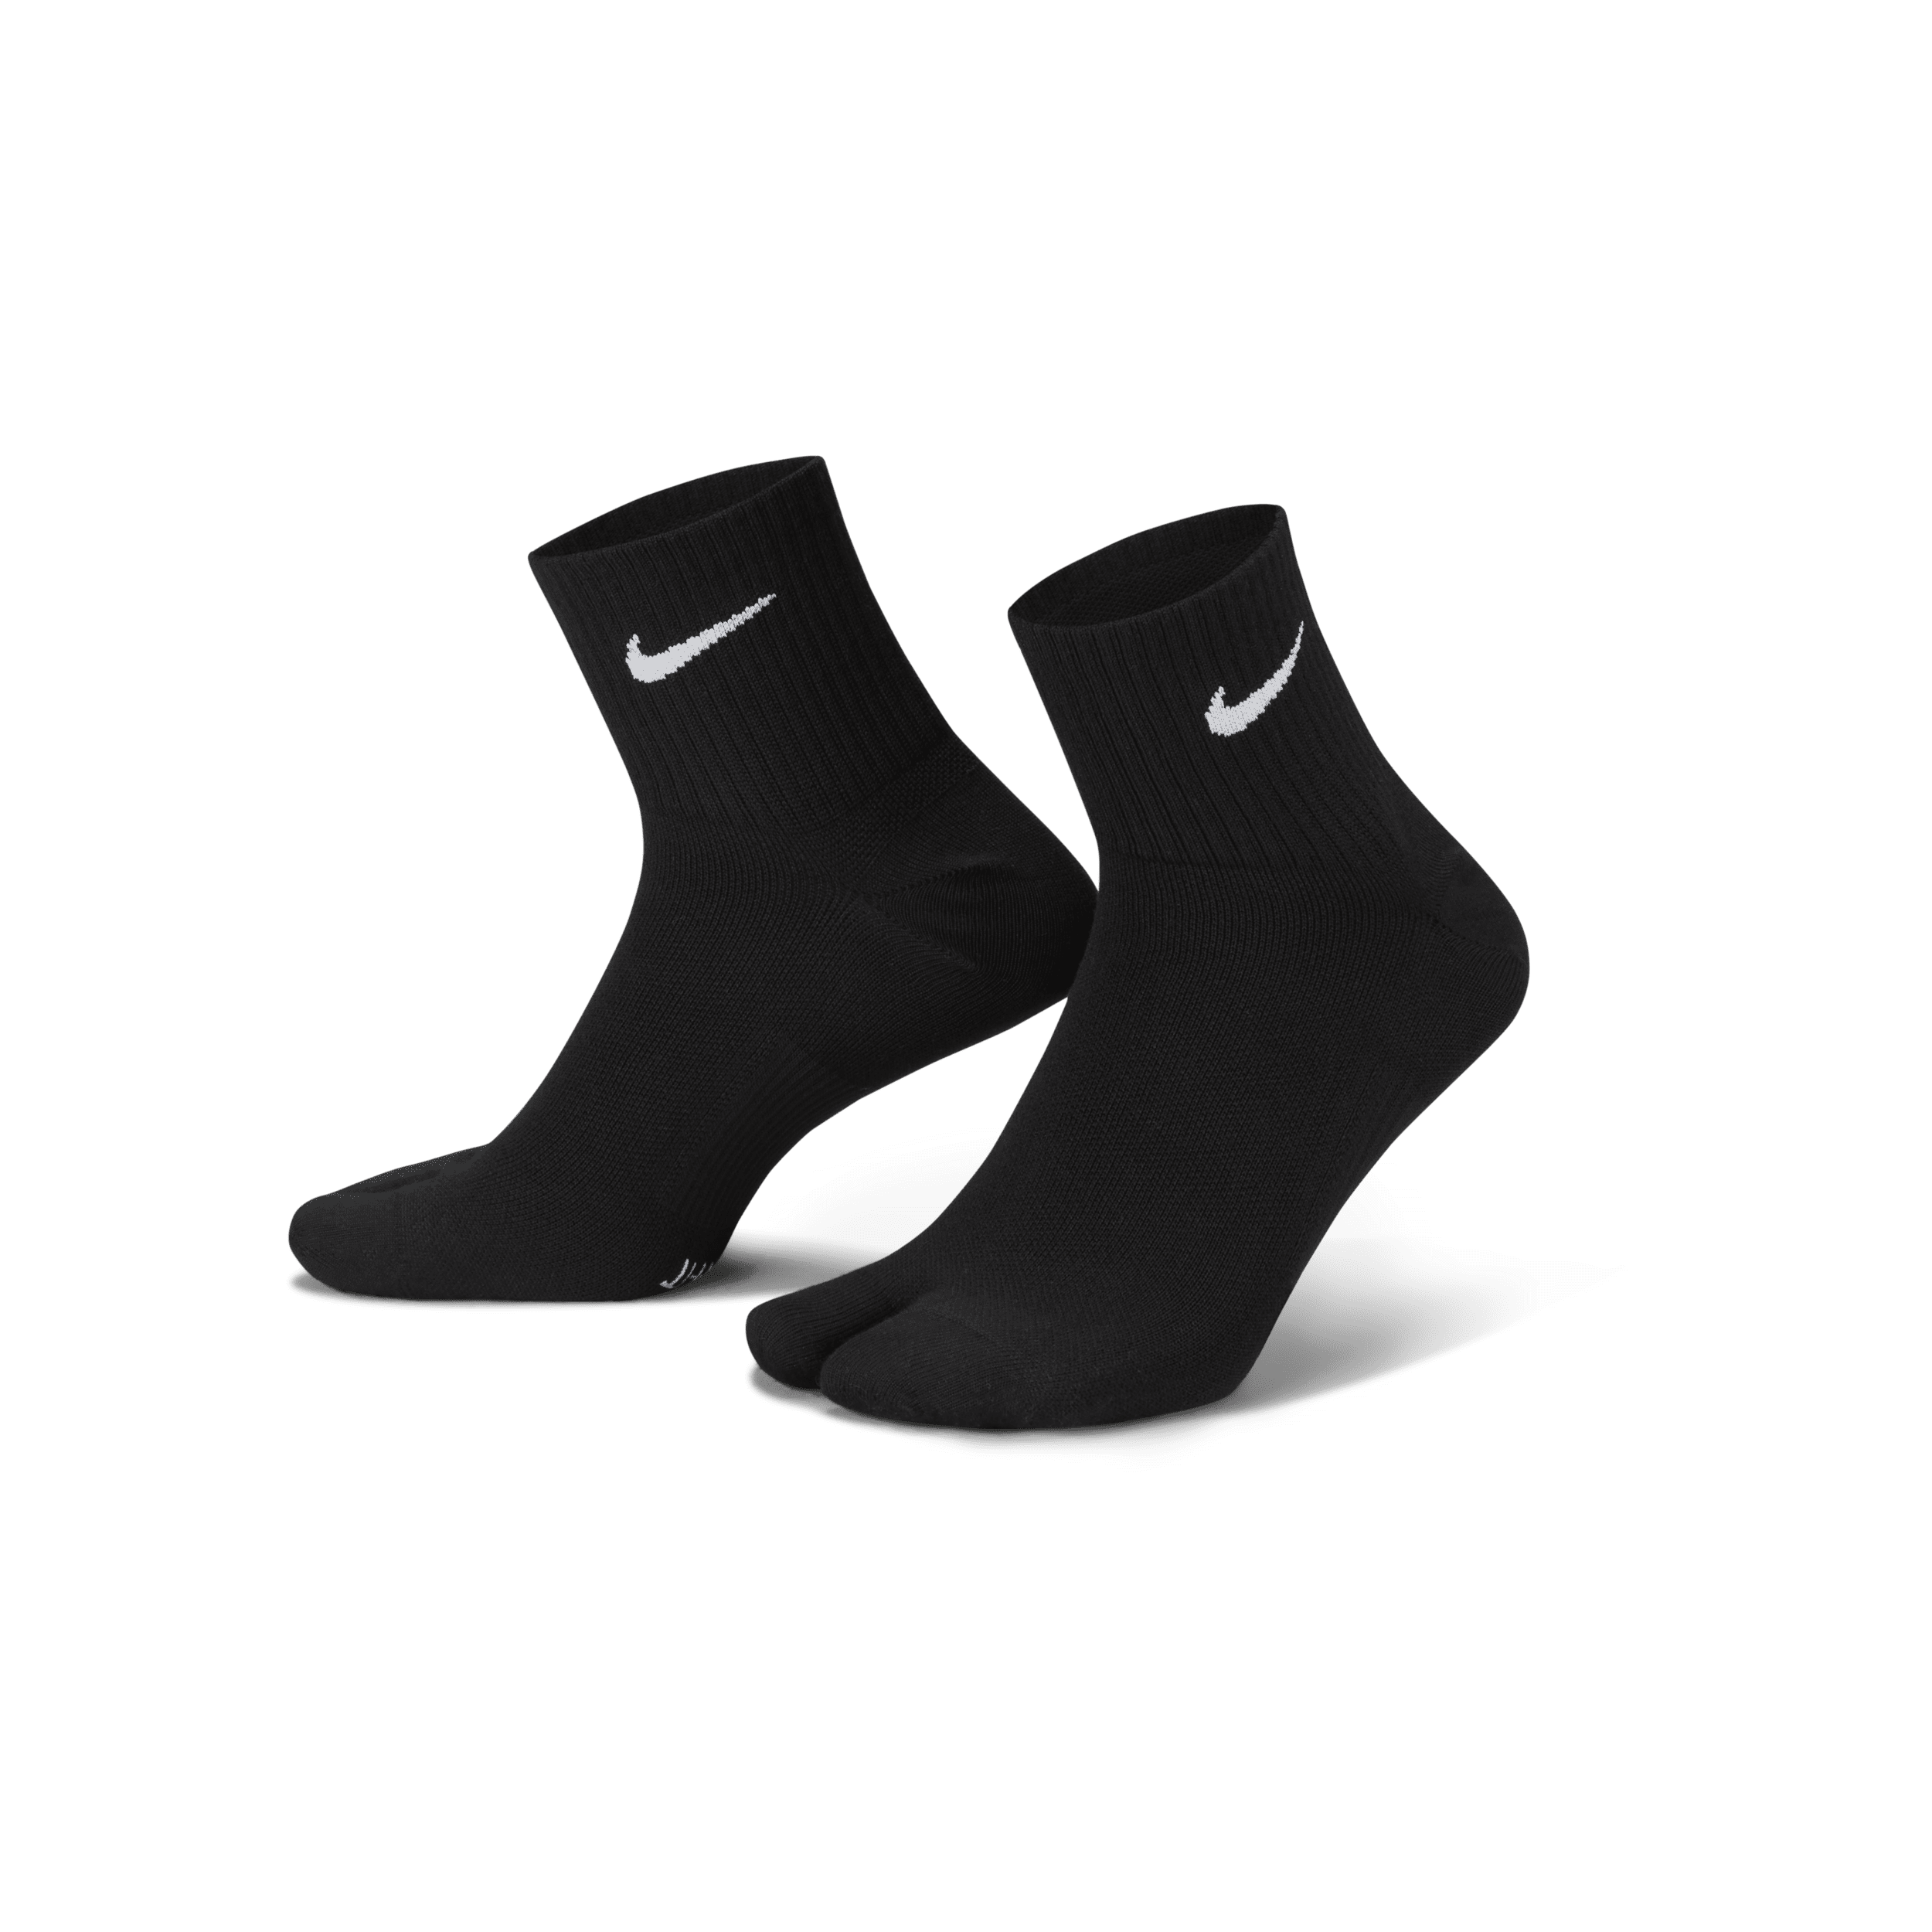 Calze leggere split-toe alla caviglia Nike Everyday Plus - Nero